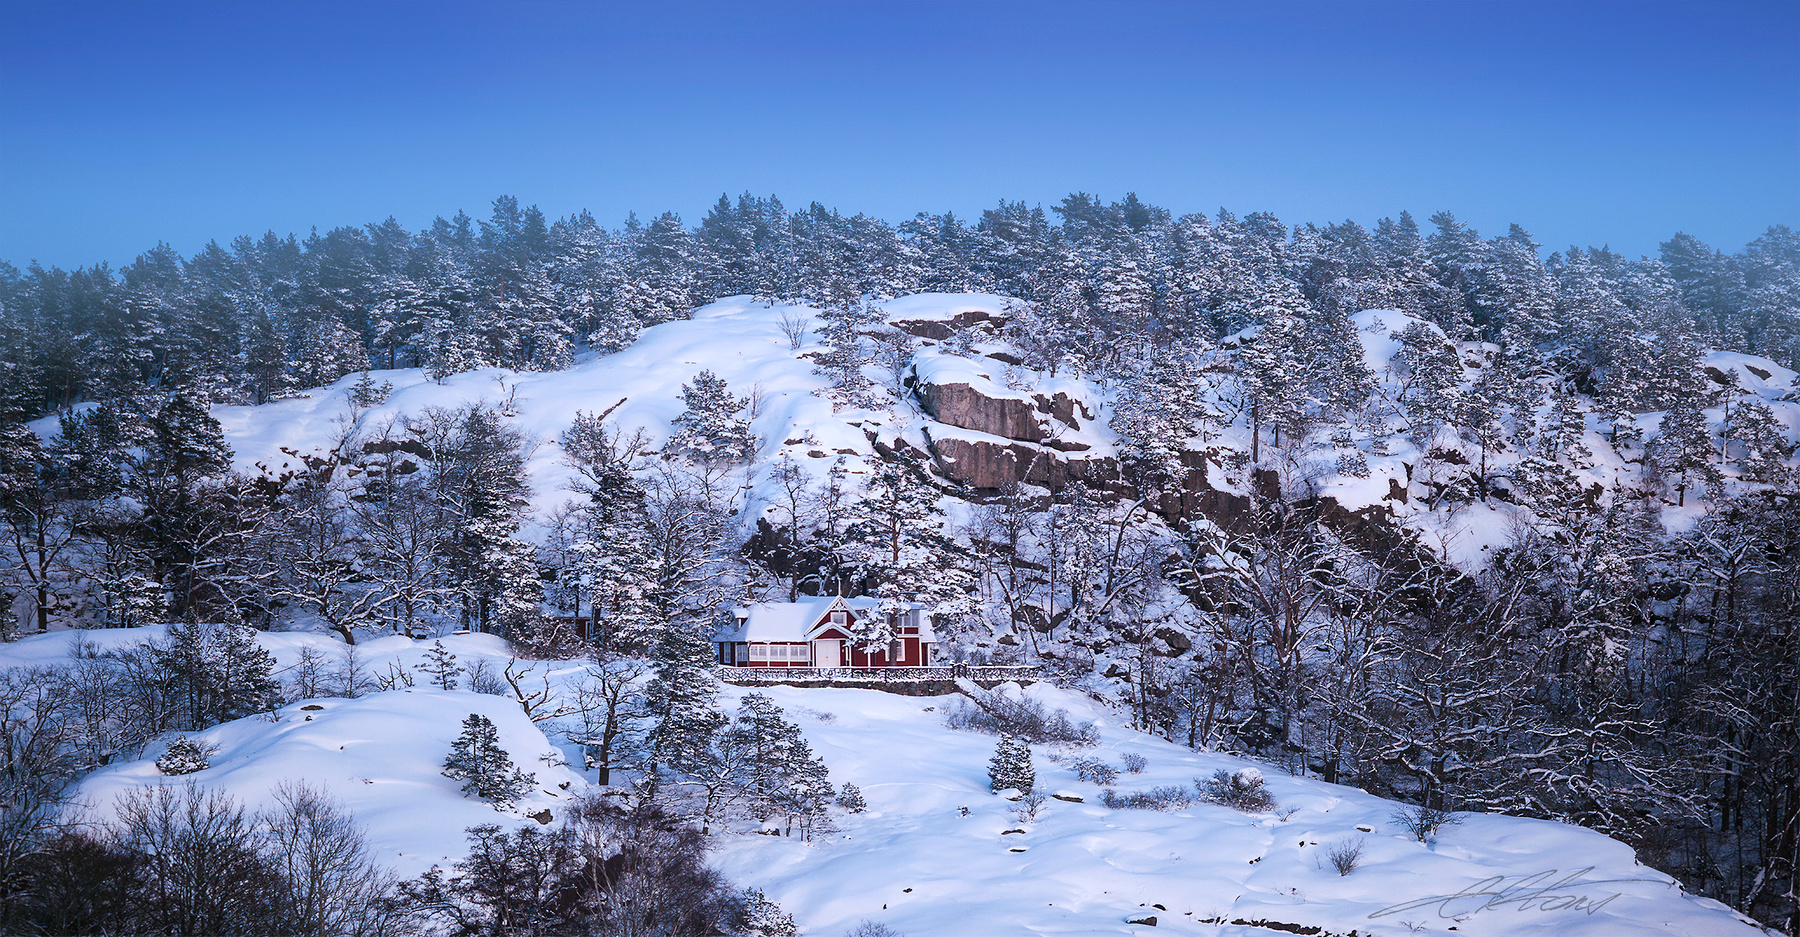 Farewell to Stockholm Digital Photo Art Landsccapes Stockholm Winter Eltons Fantasies